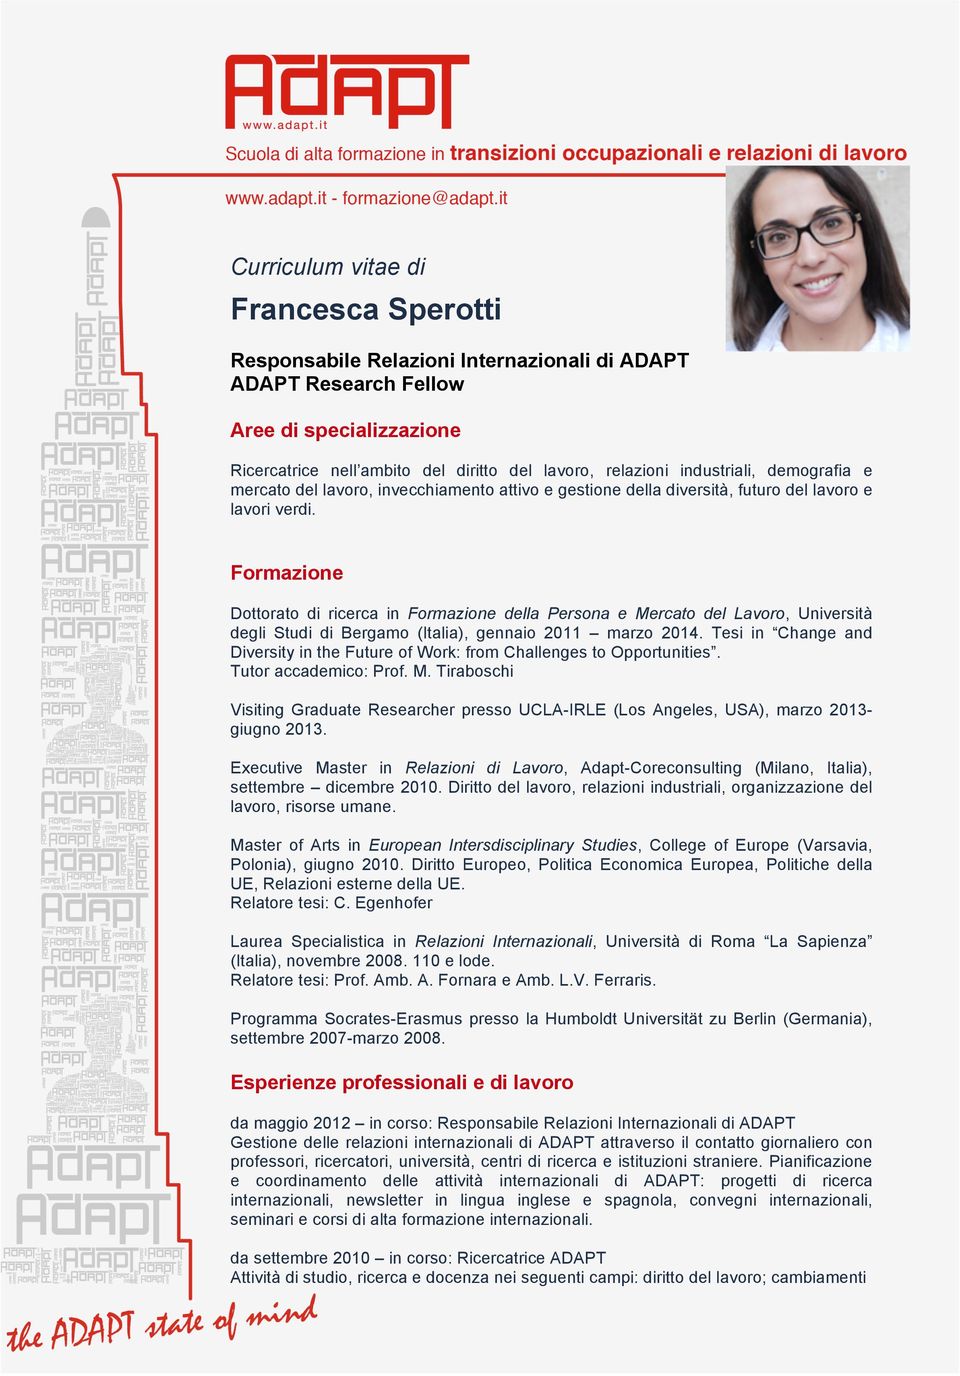 Formazione Dottorato di ricerca in Formazione della Persona e Mercato del Lavoro, Università degli Studi di Bergamo (Italia), gennaio 2011 marzo 2014.